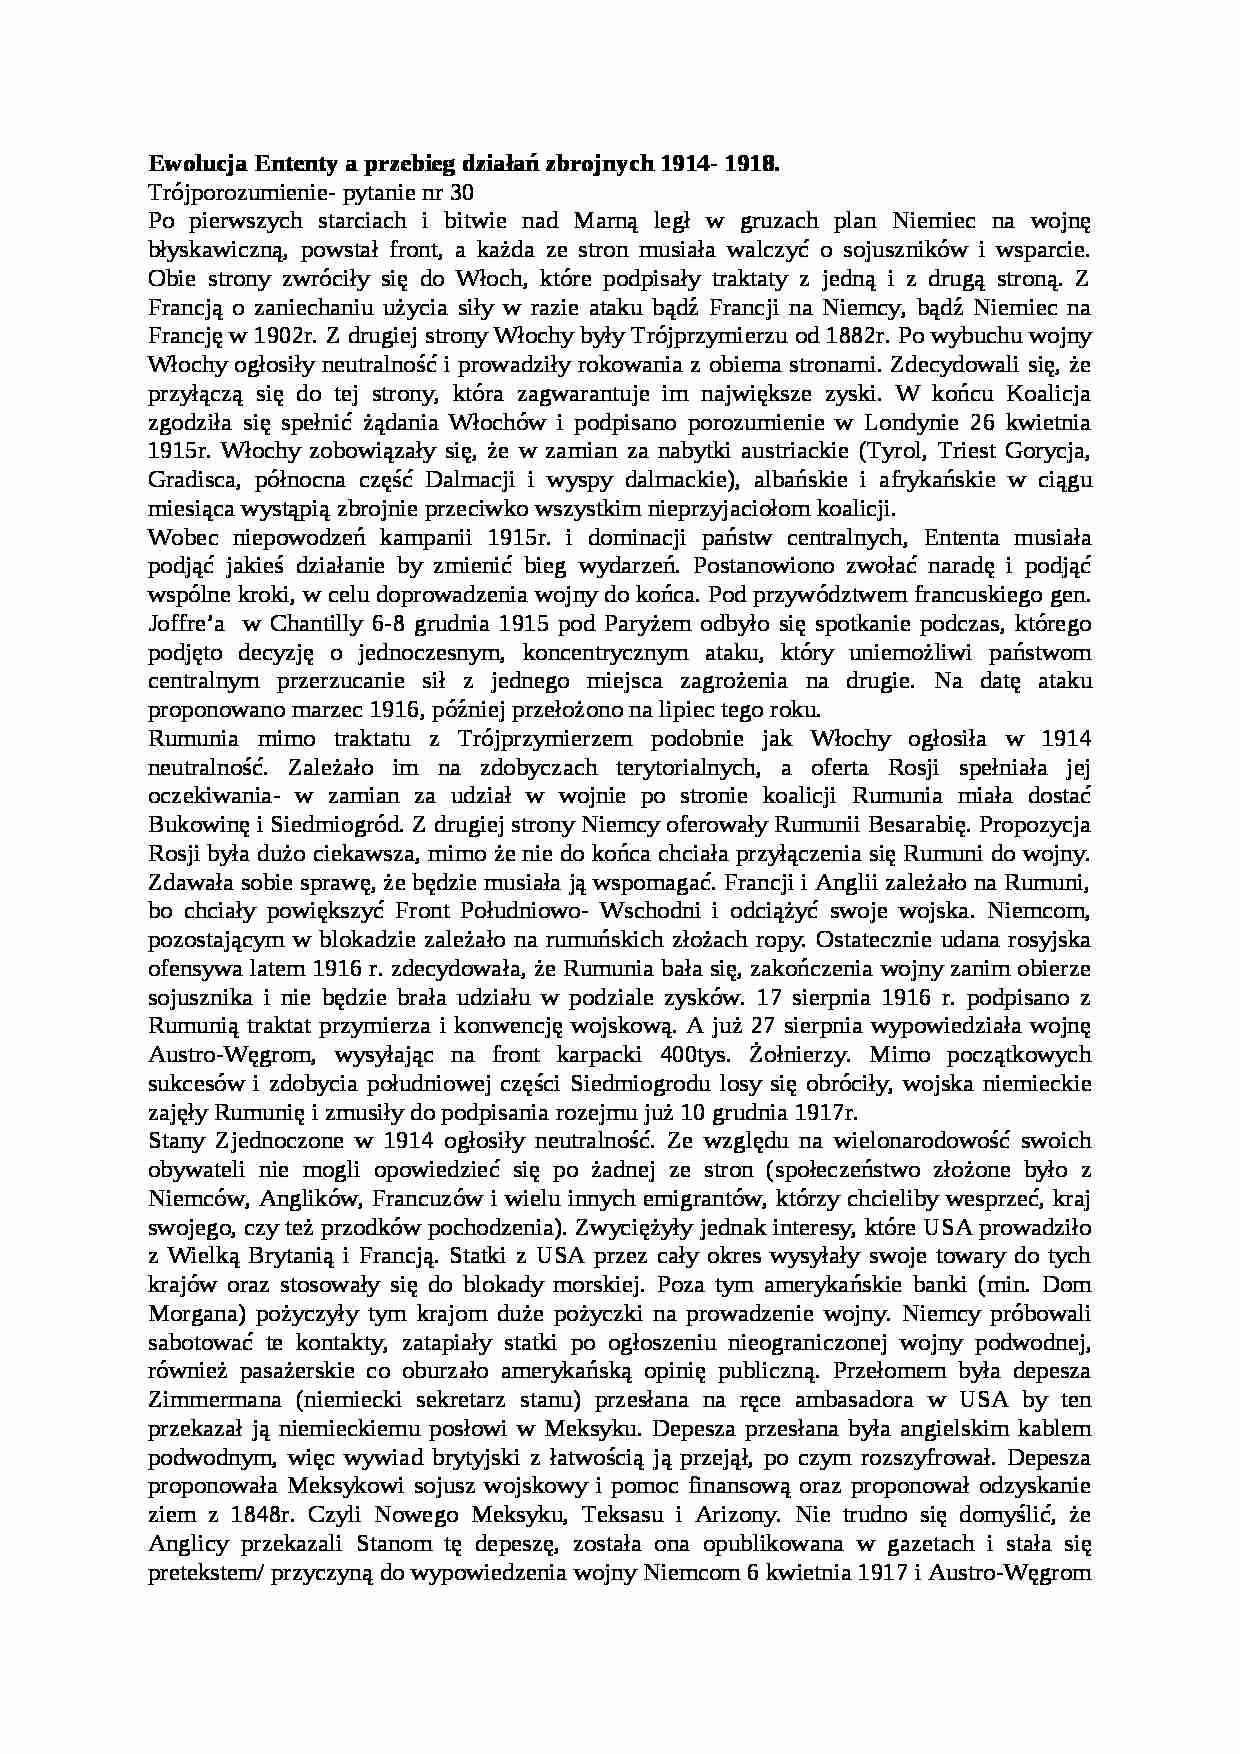 Wykład - Ewolucja Ententy a przebieg działań zbrojnych 1914-1918 - strona 1